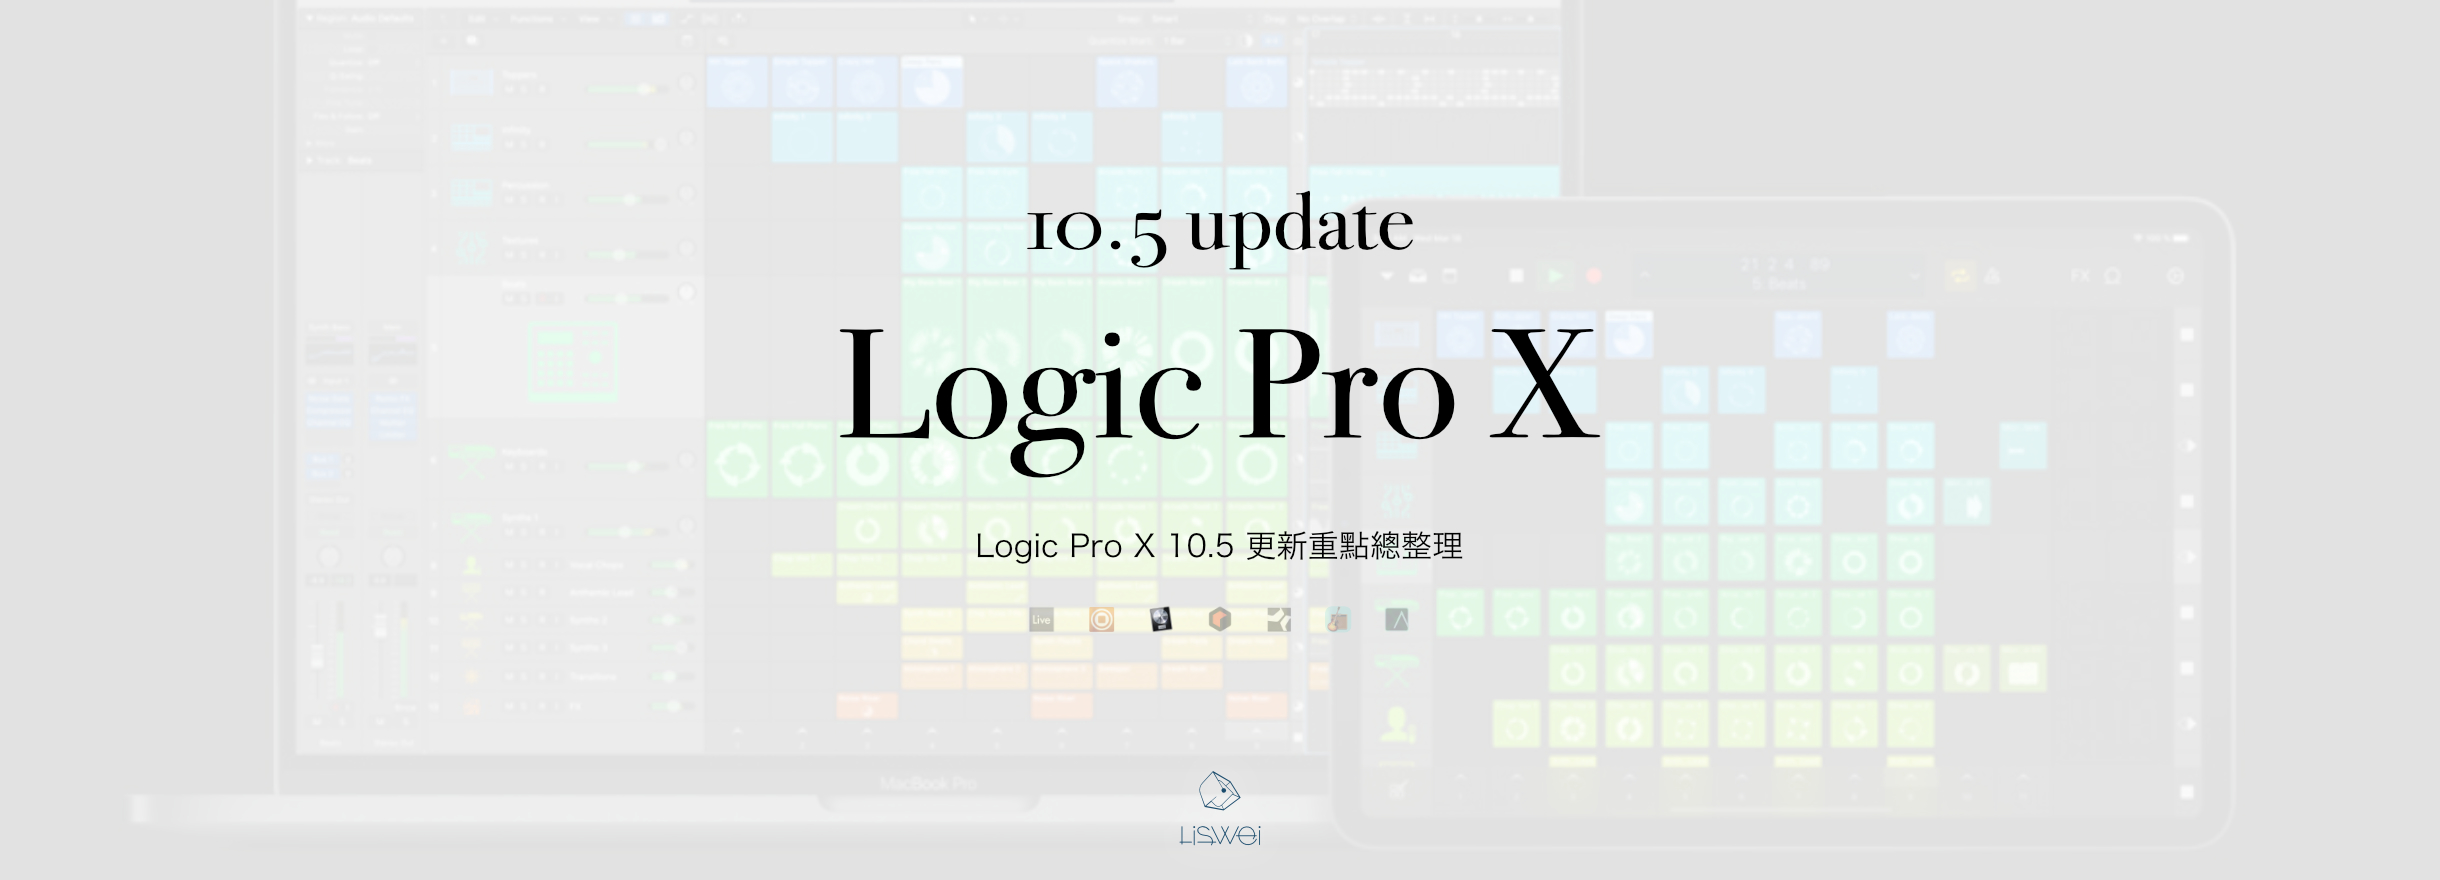 Logic Pro 10.5 重點更新整理